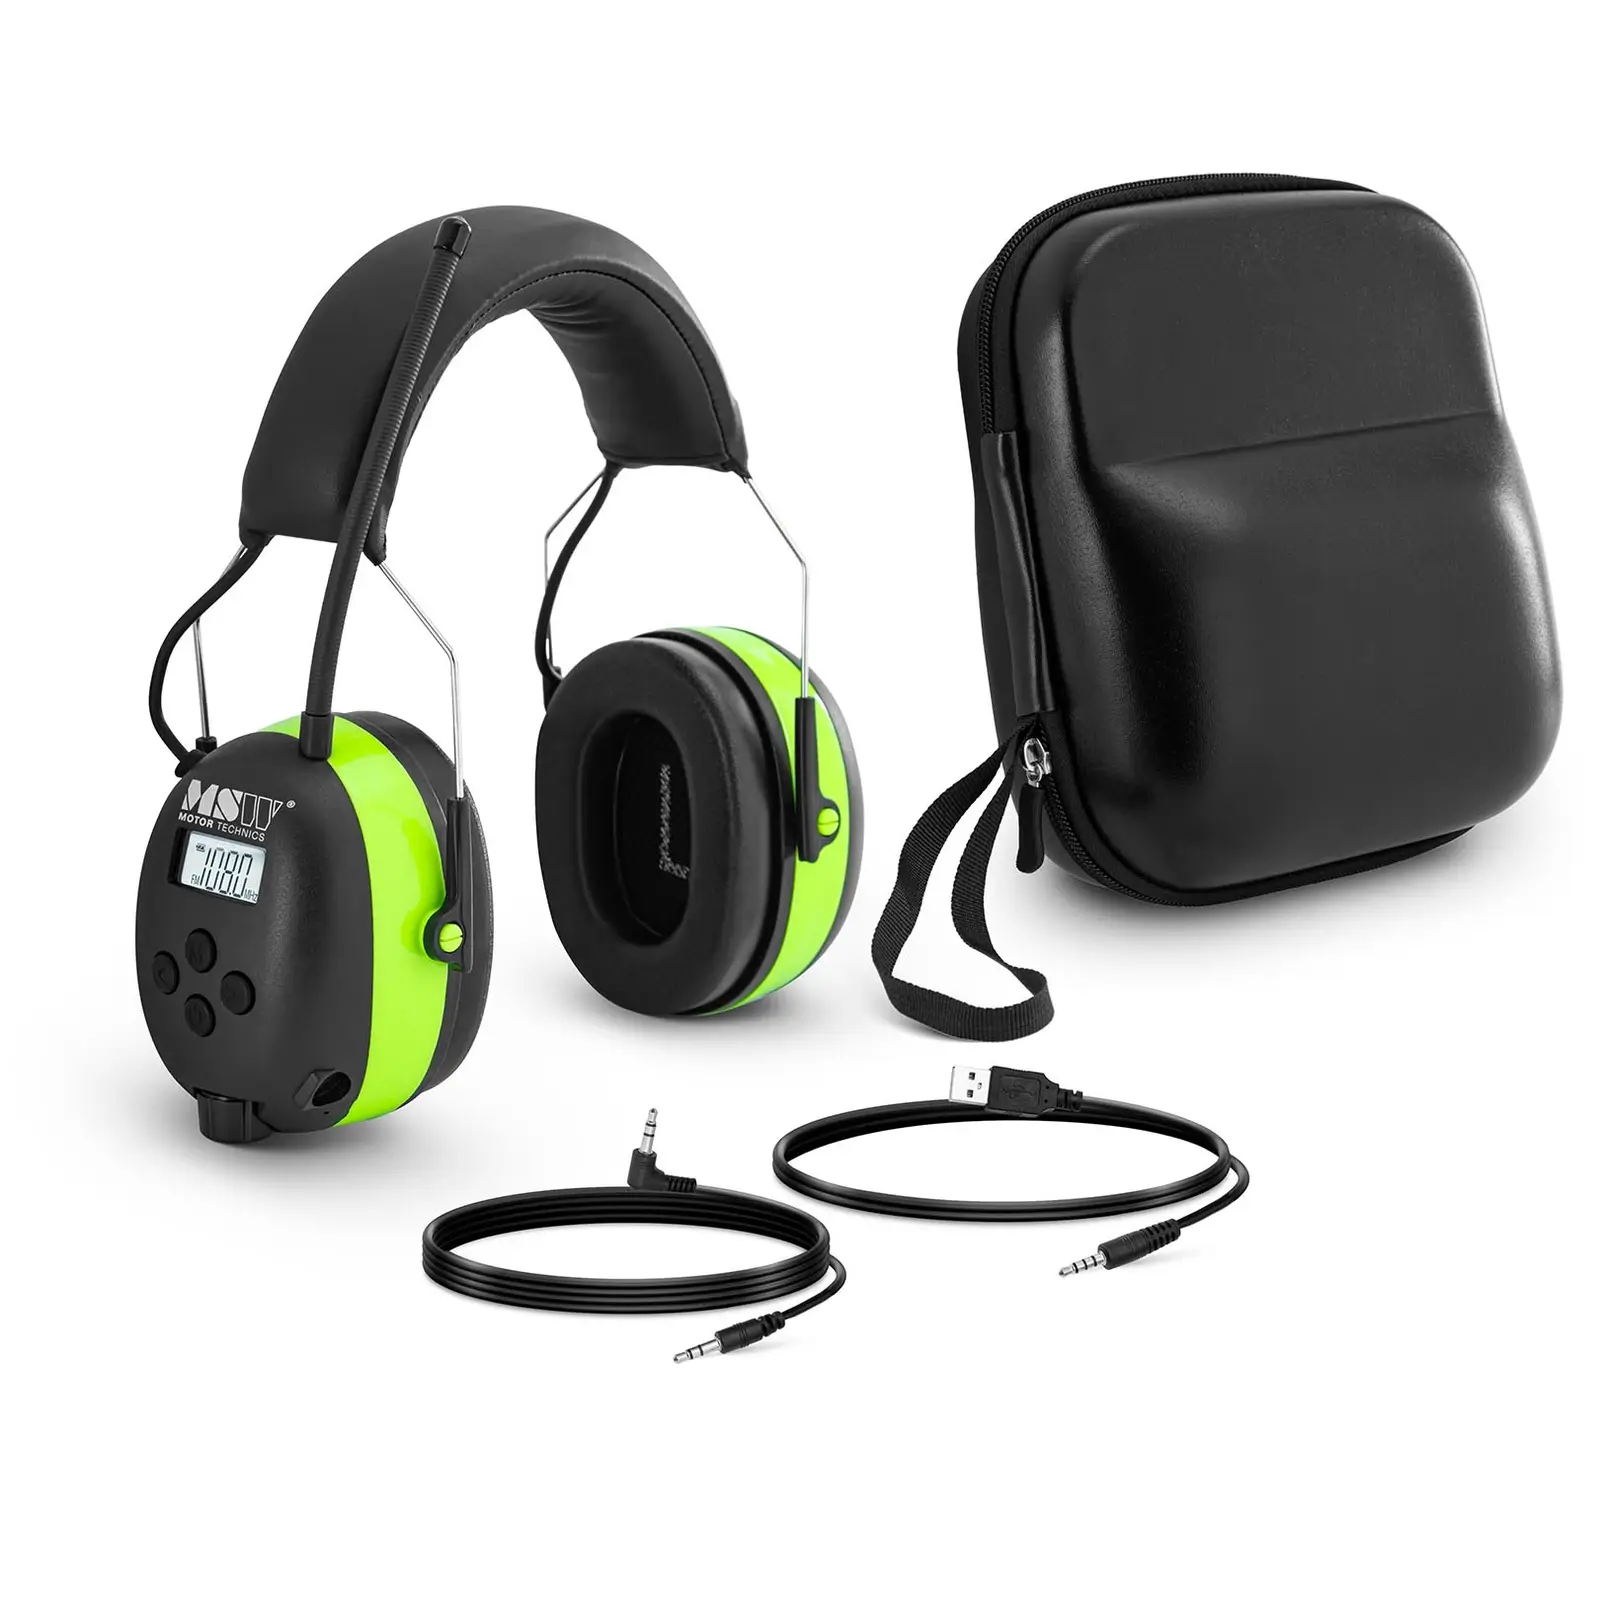 Słuchawki wygłuszające z Bluetooth - mikrofon - wyświetlacz LCD - bateria - zielone